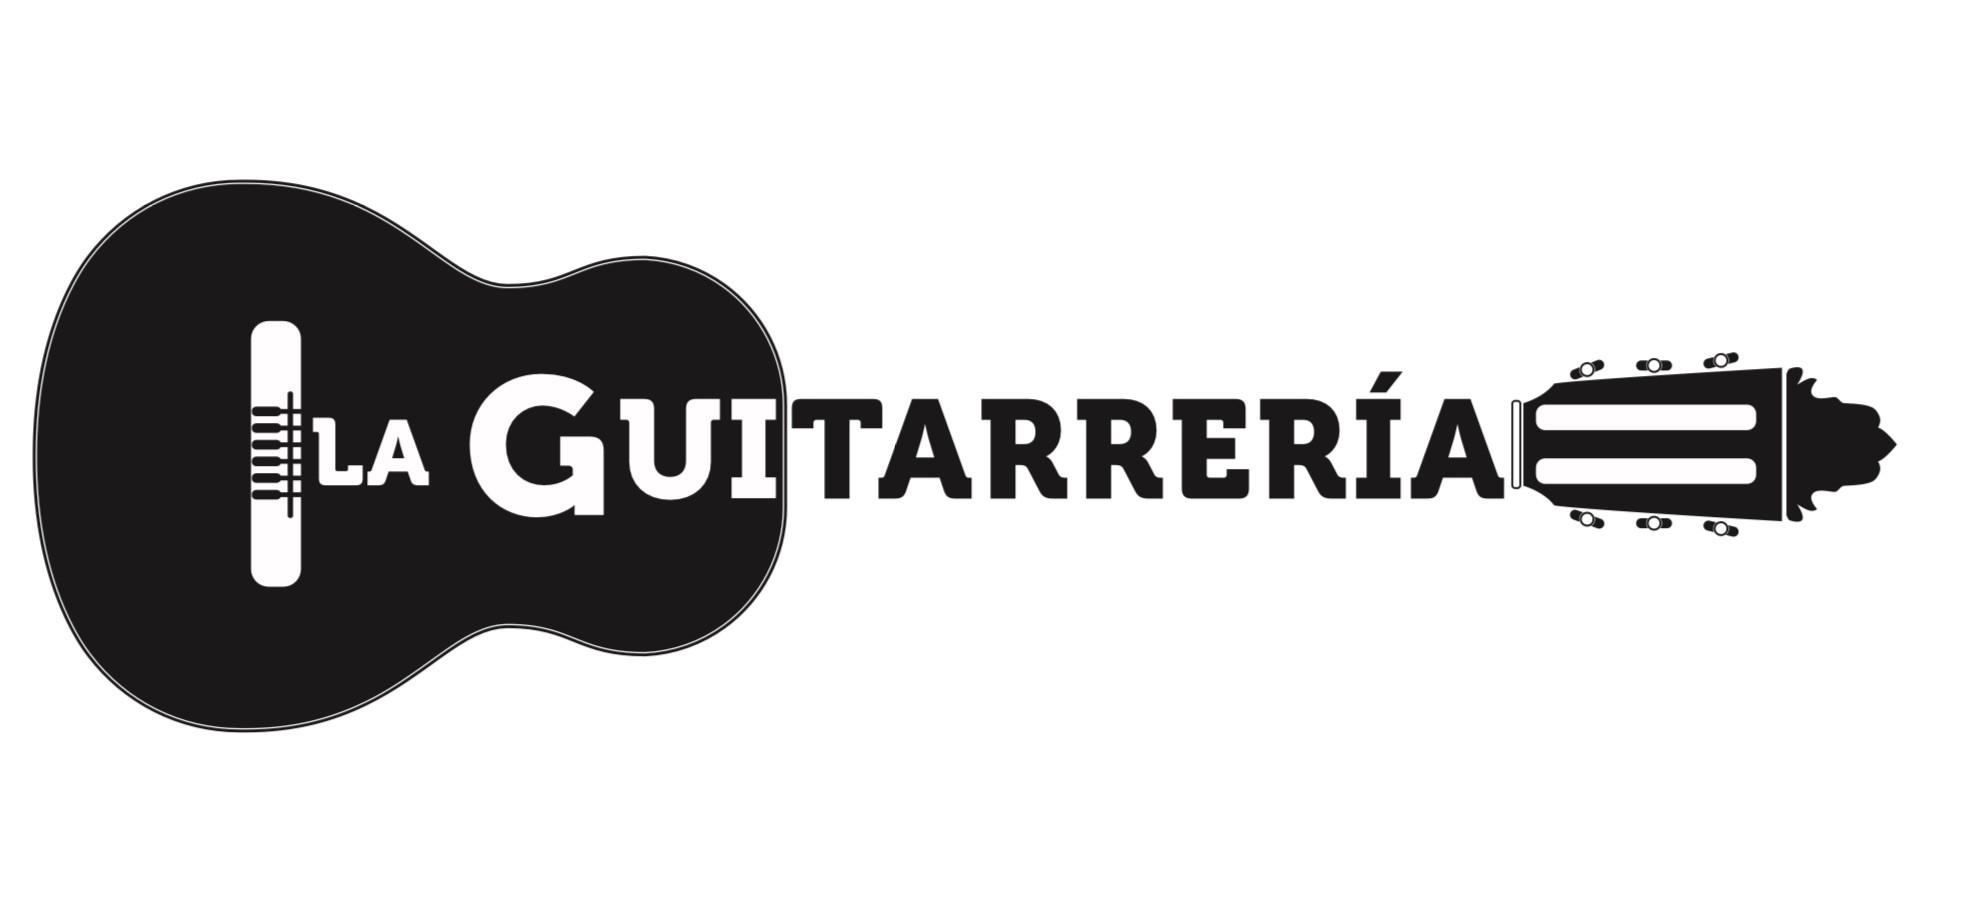 La Guitarreria